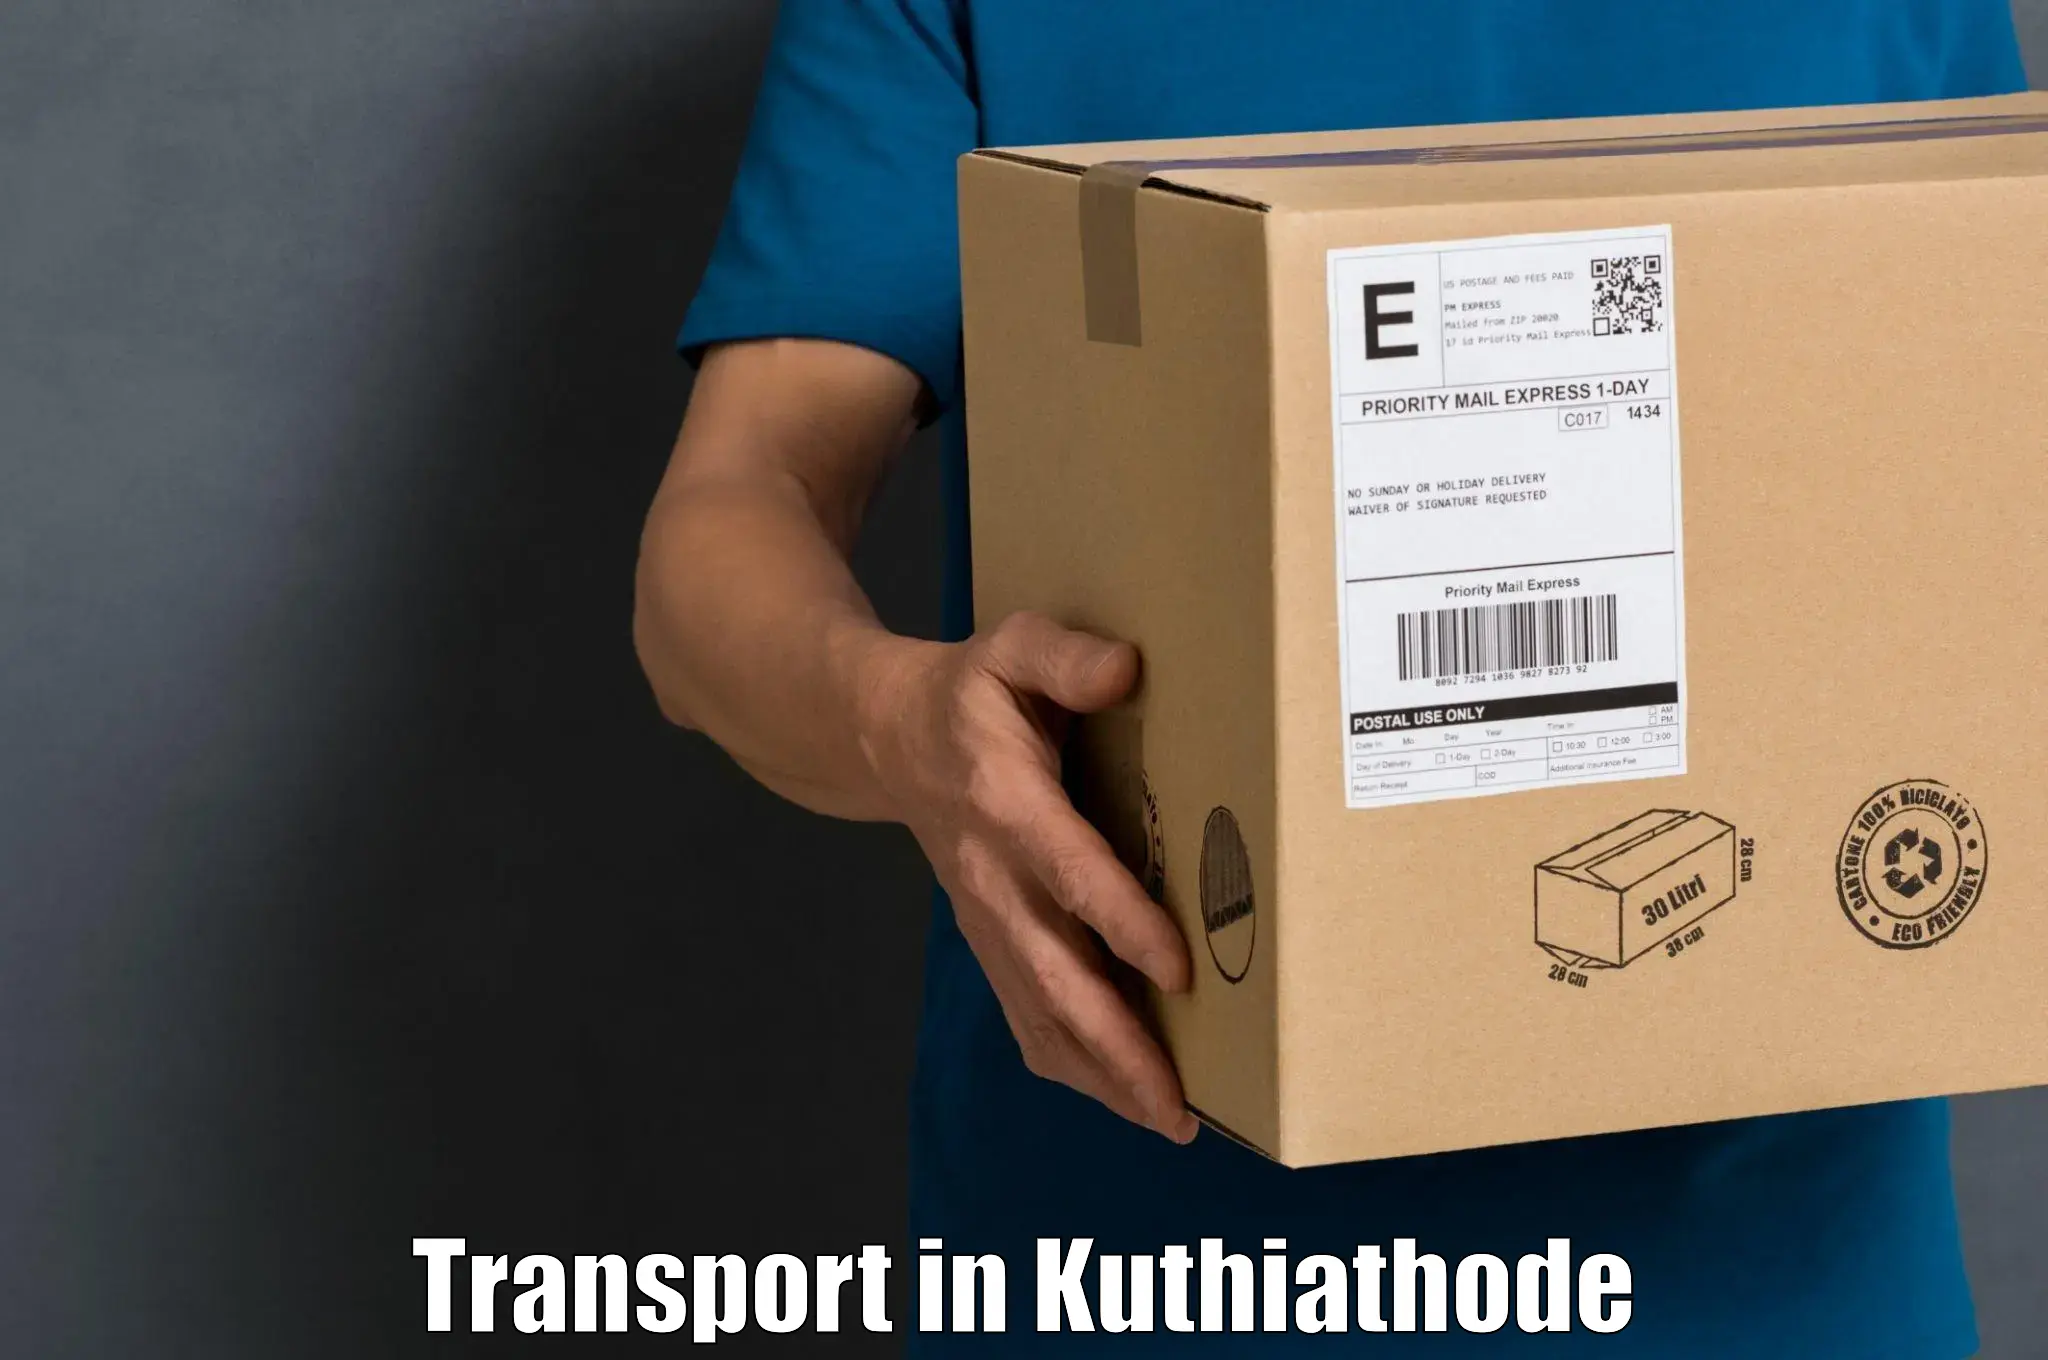 Online transport in Kuthiathode